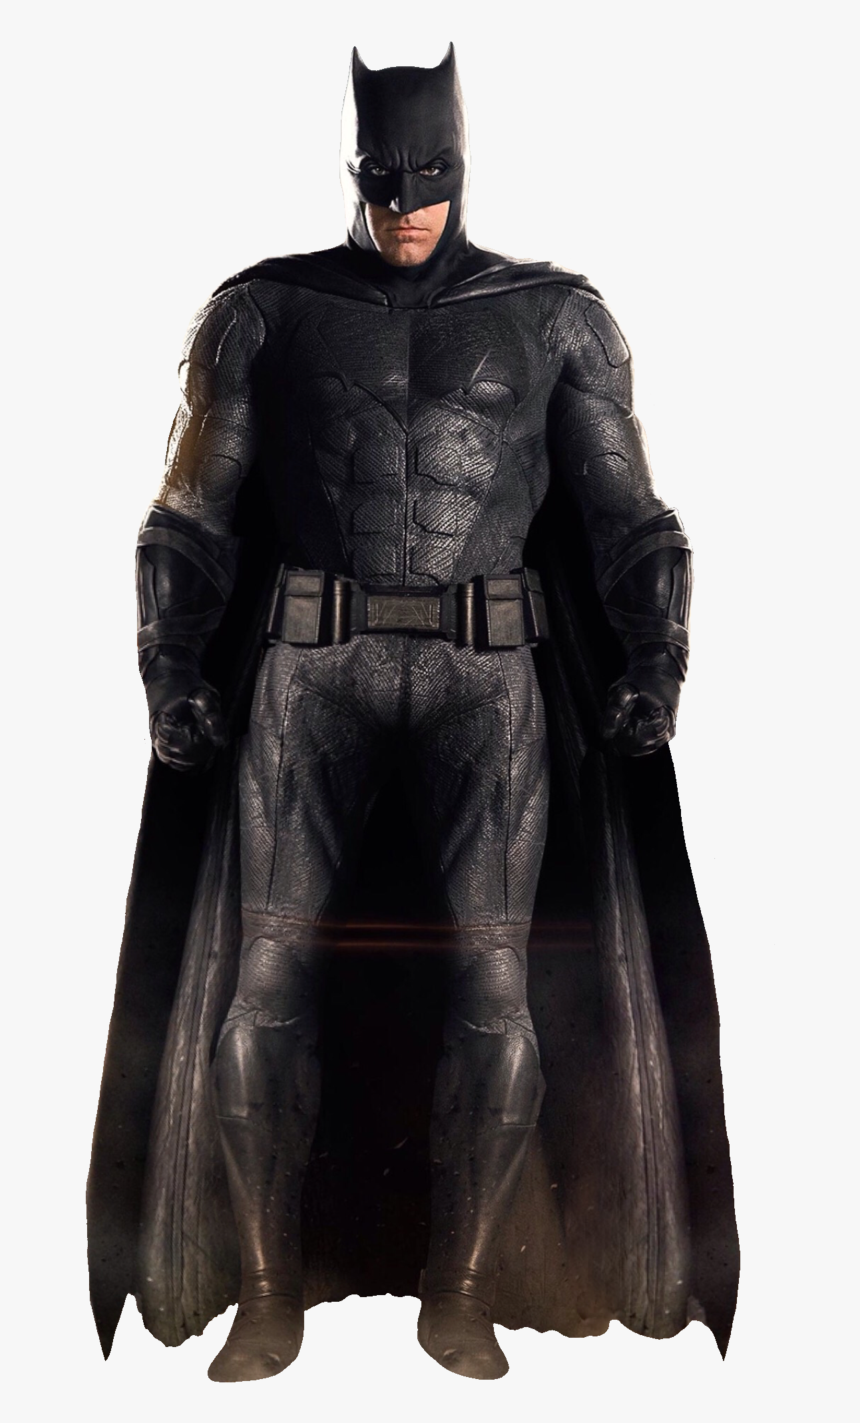 Batman Justice League Png Image - Ben Affleck Batman Png, Transparent Png, Free Download